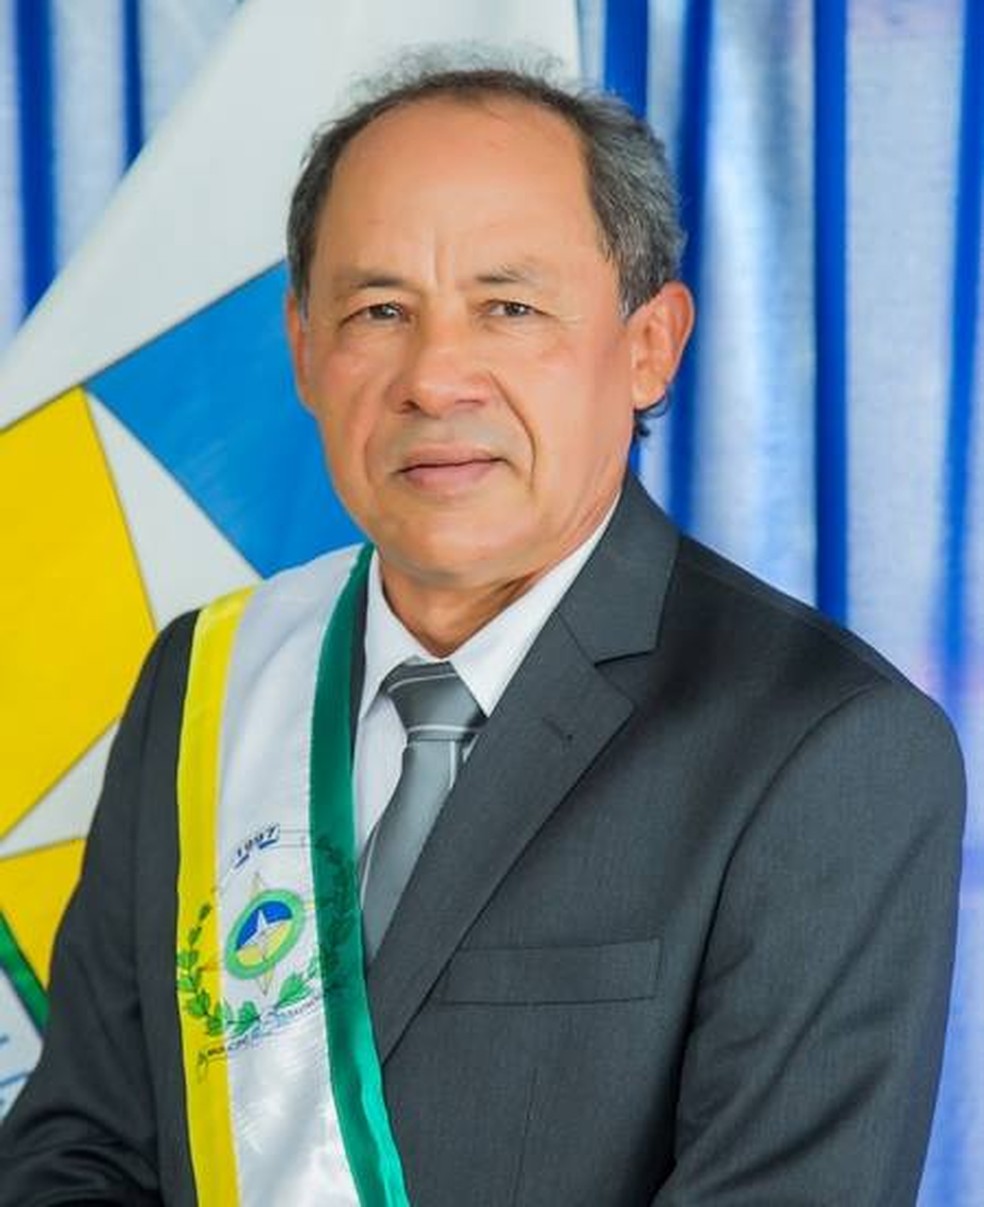 Ivanildo Paiva (PRB), prefeito de Davinopólis é encontrado morto no Maranhão — Foto: Divulgação/Prefeitura Municipal de Davinopólis